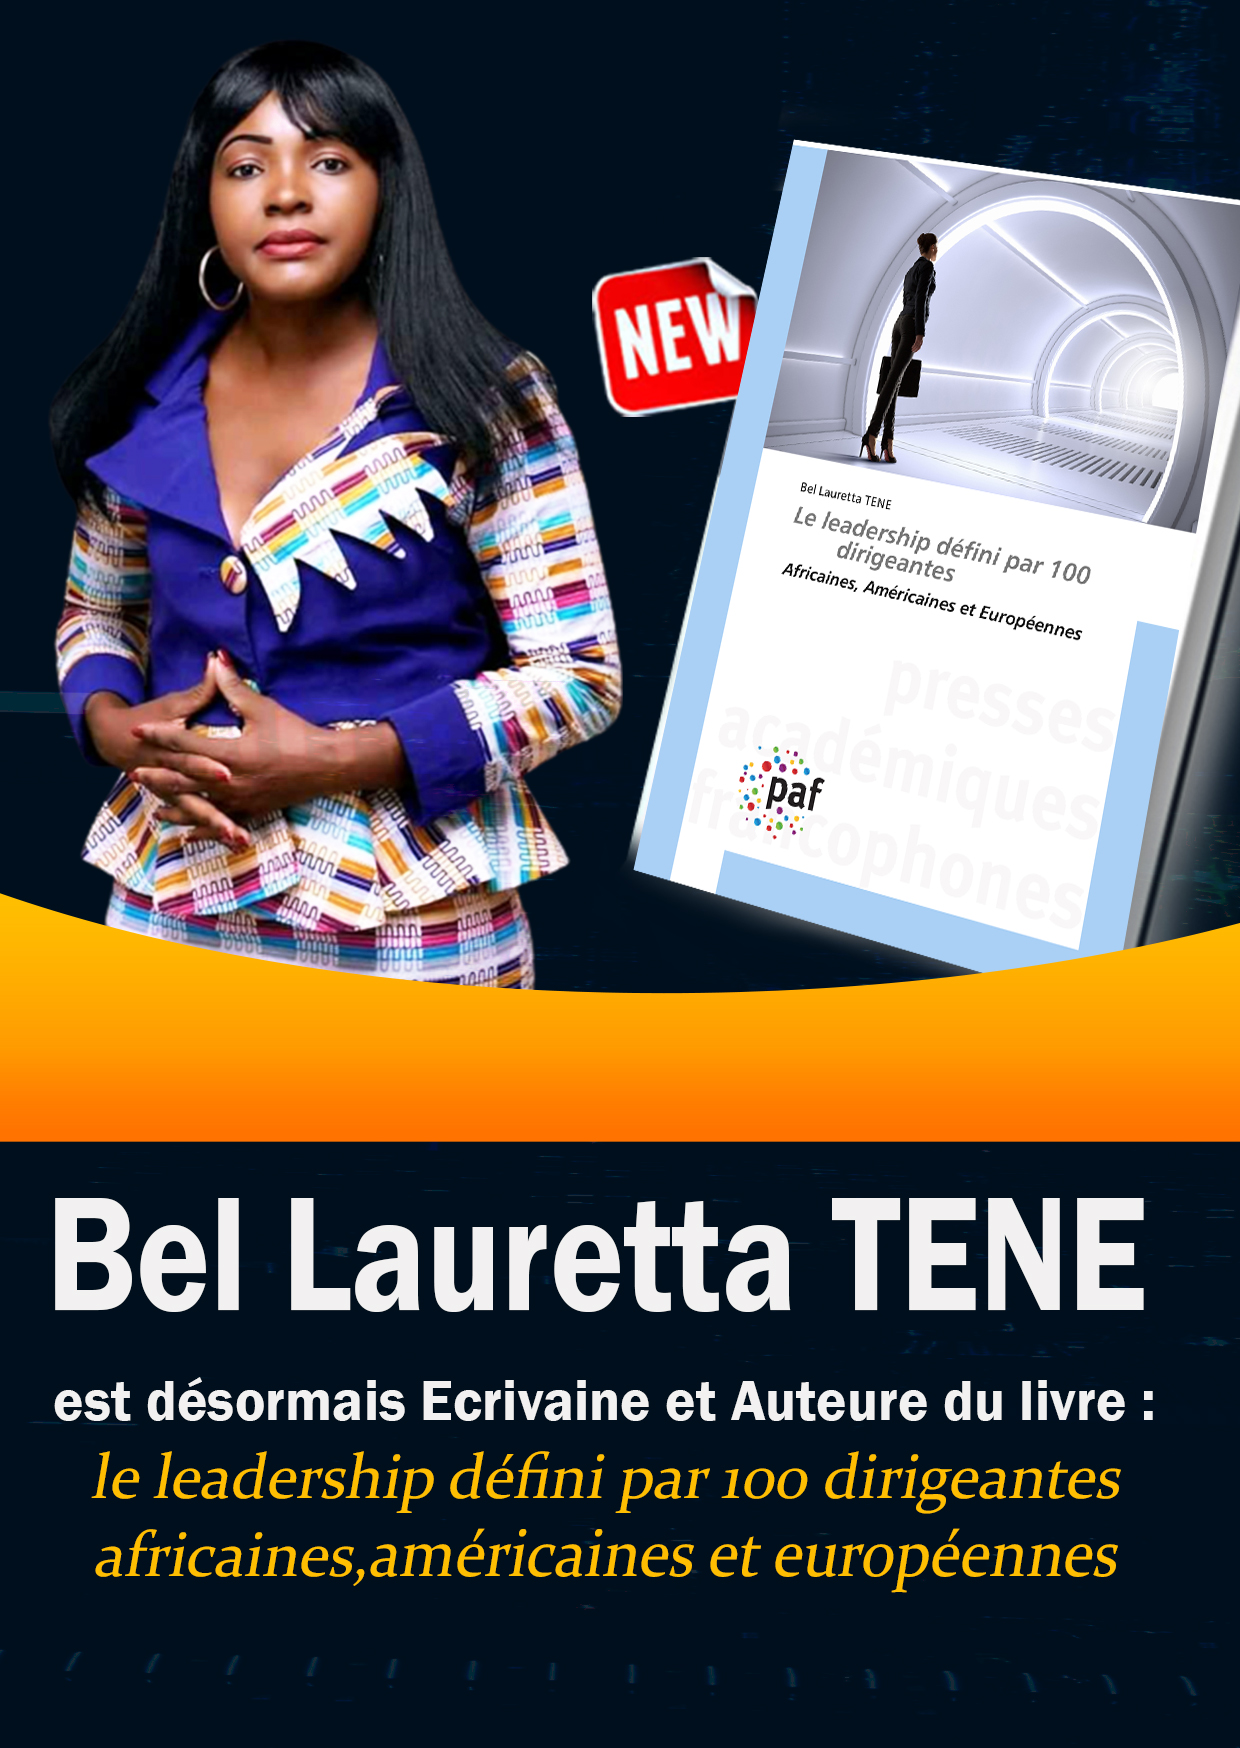  Bel Lauretta TENE, désormais Ecrivaine et Auteure du livre 